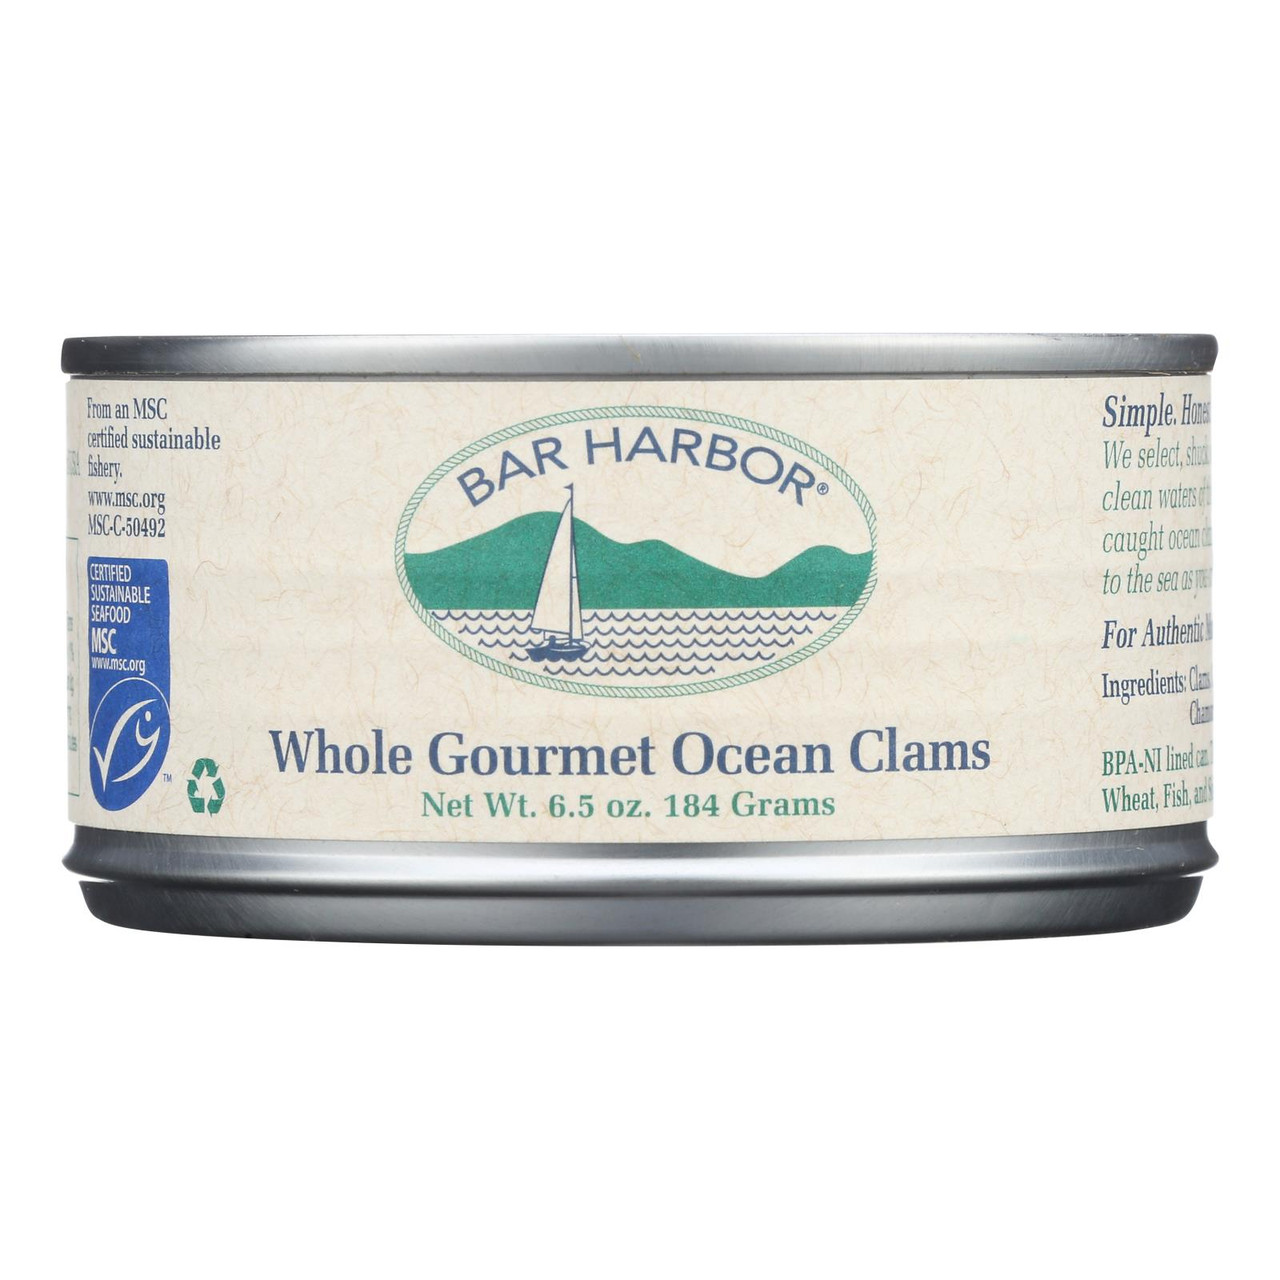 Bar Harbor Clam Juice Case